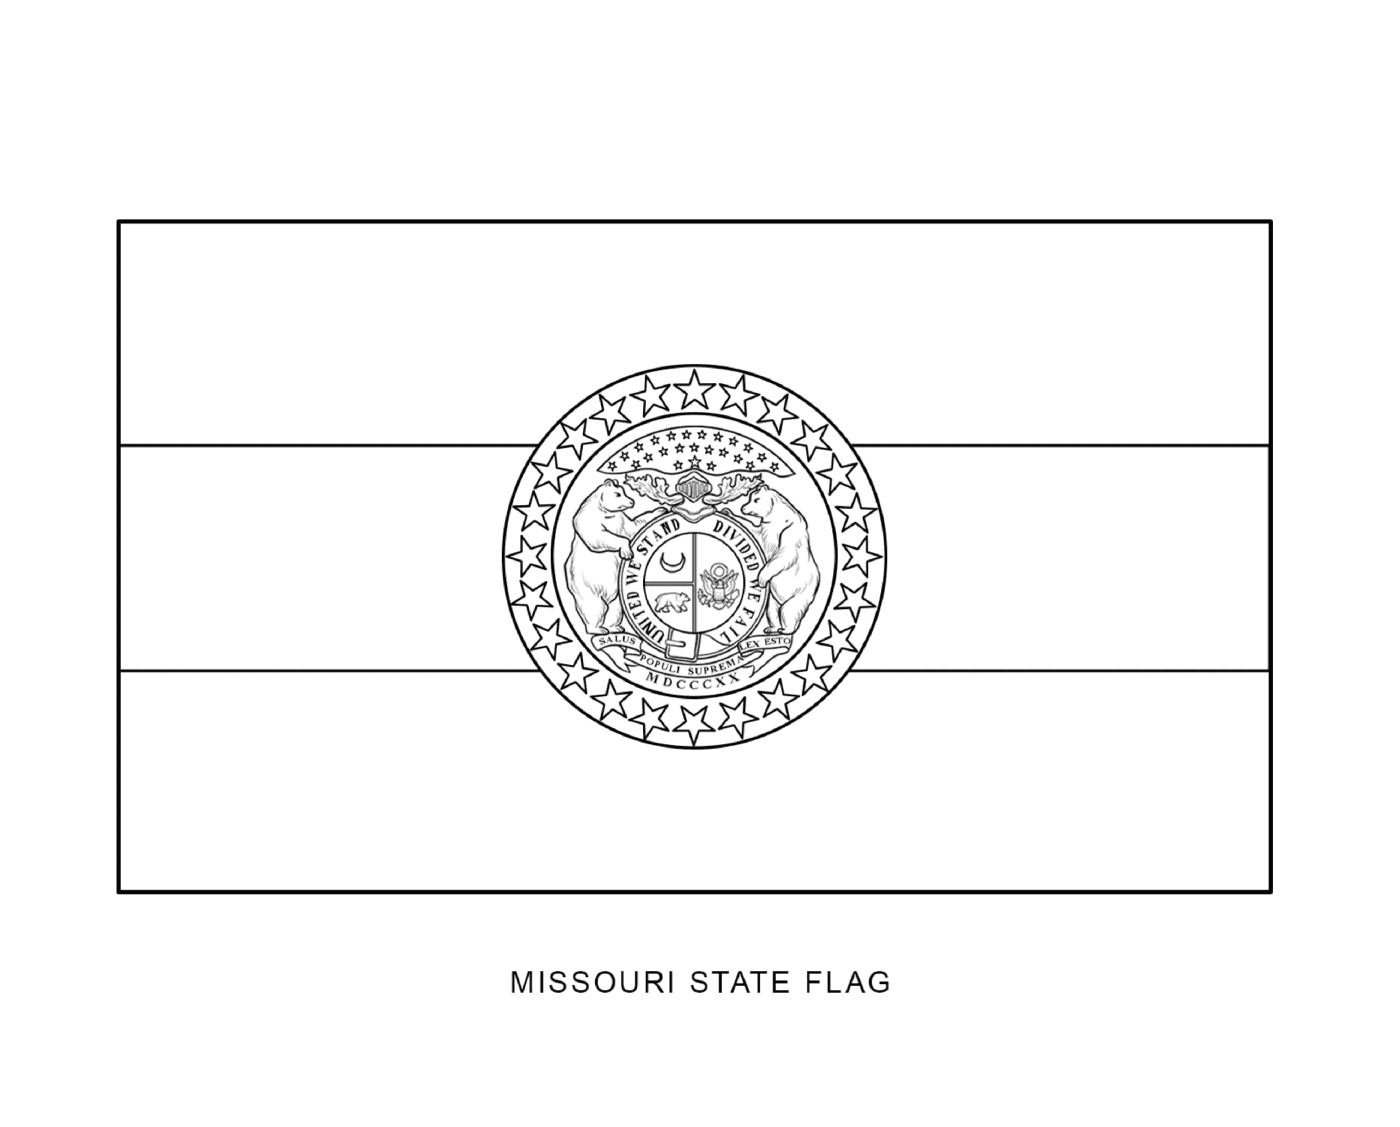   Drapeau de l'État du Missouri dessiné à l'encre noire 